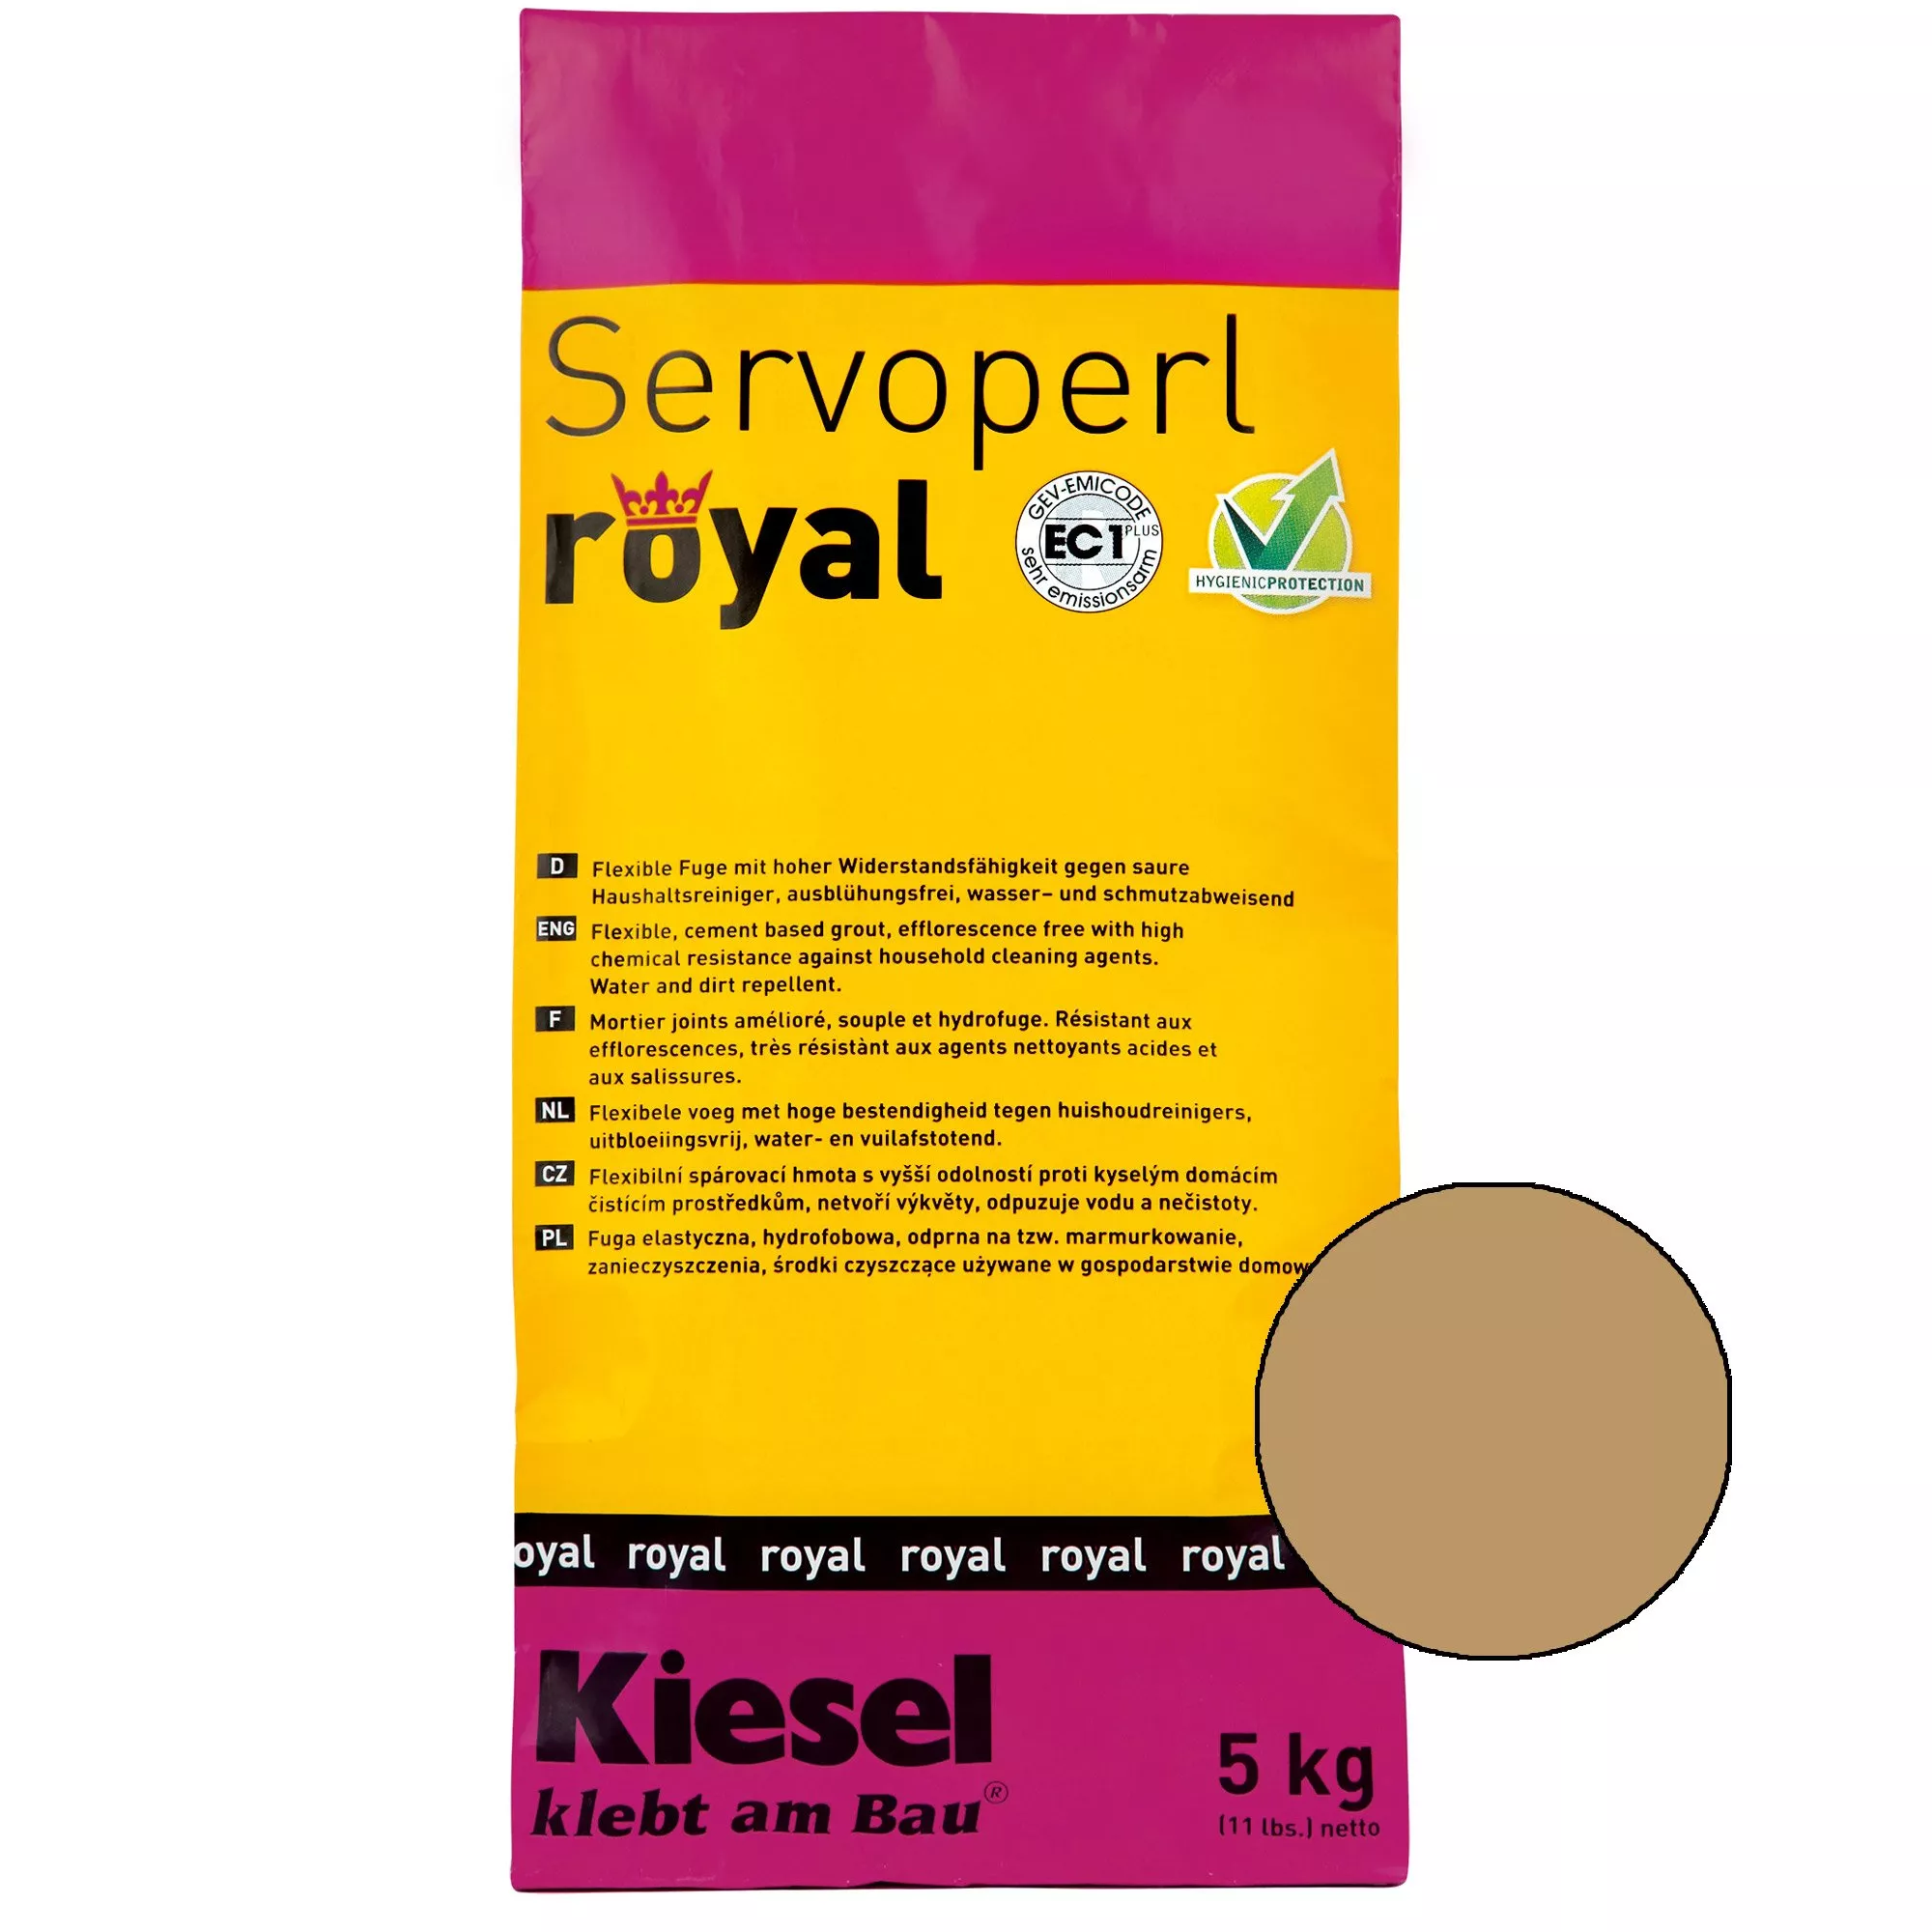 Kiesel Servoperl royal - Flexible, wasser- und schmutzabweisende Fuge (5KG Hellbraun)